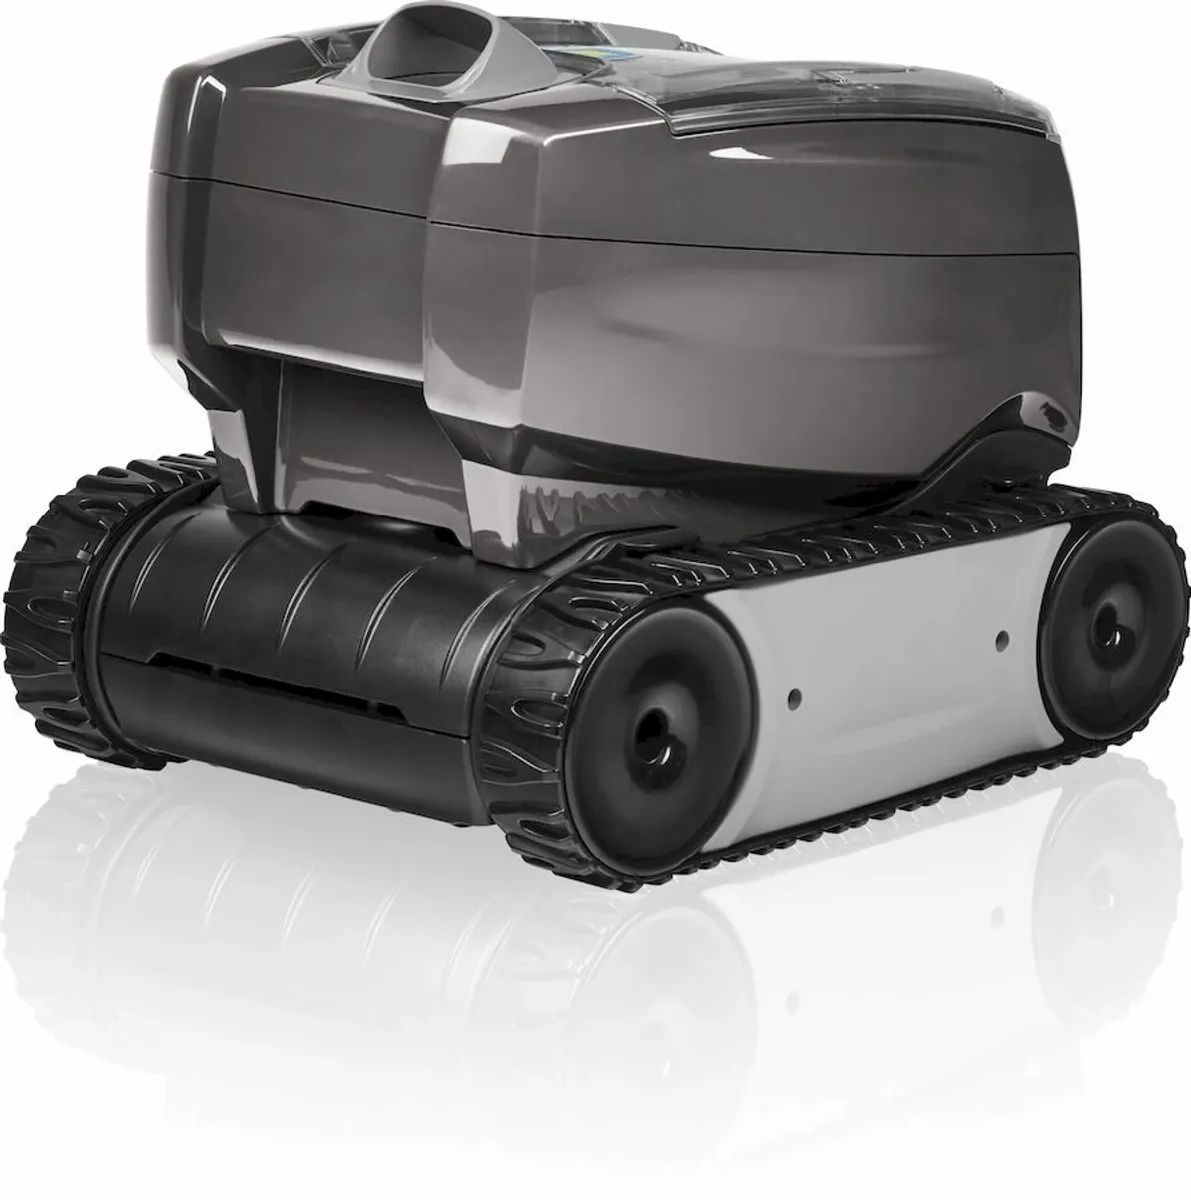 Chariot de transport pour Zodiac OT TORNAX - Accessoire robot nettoyeur -  piscine - Zodiac